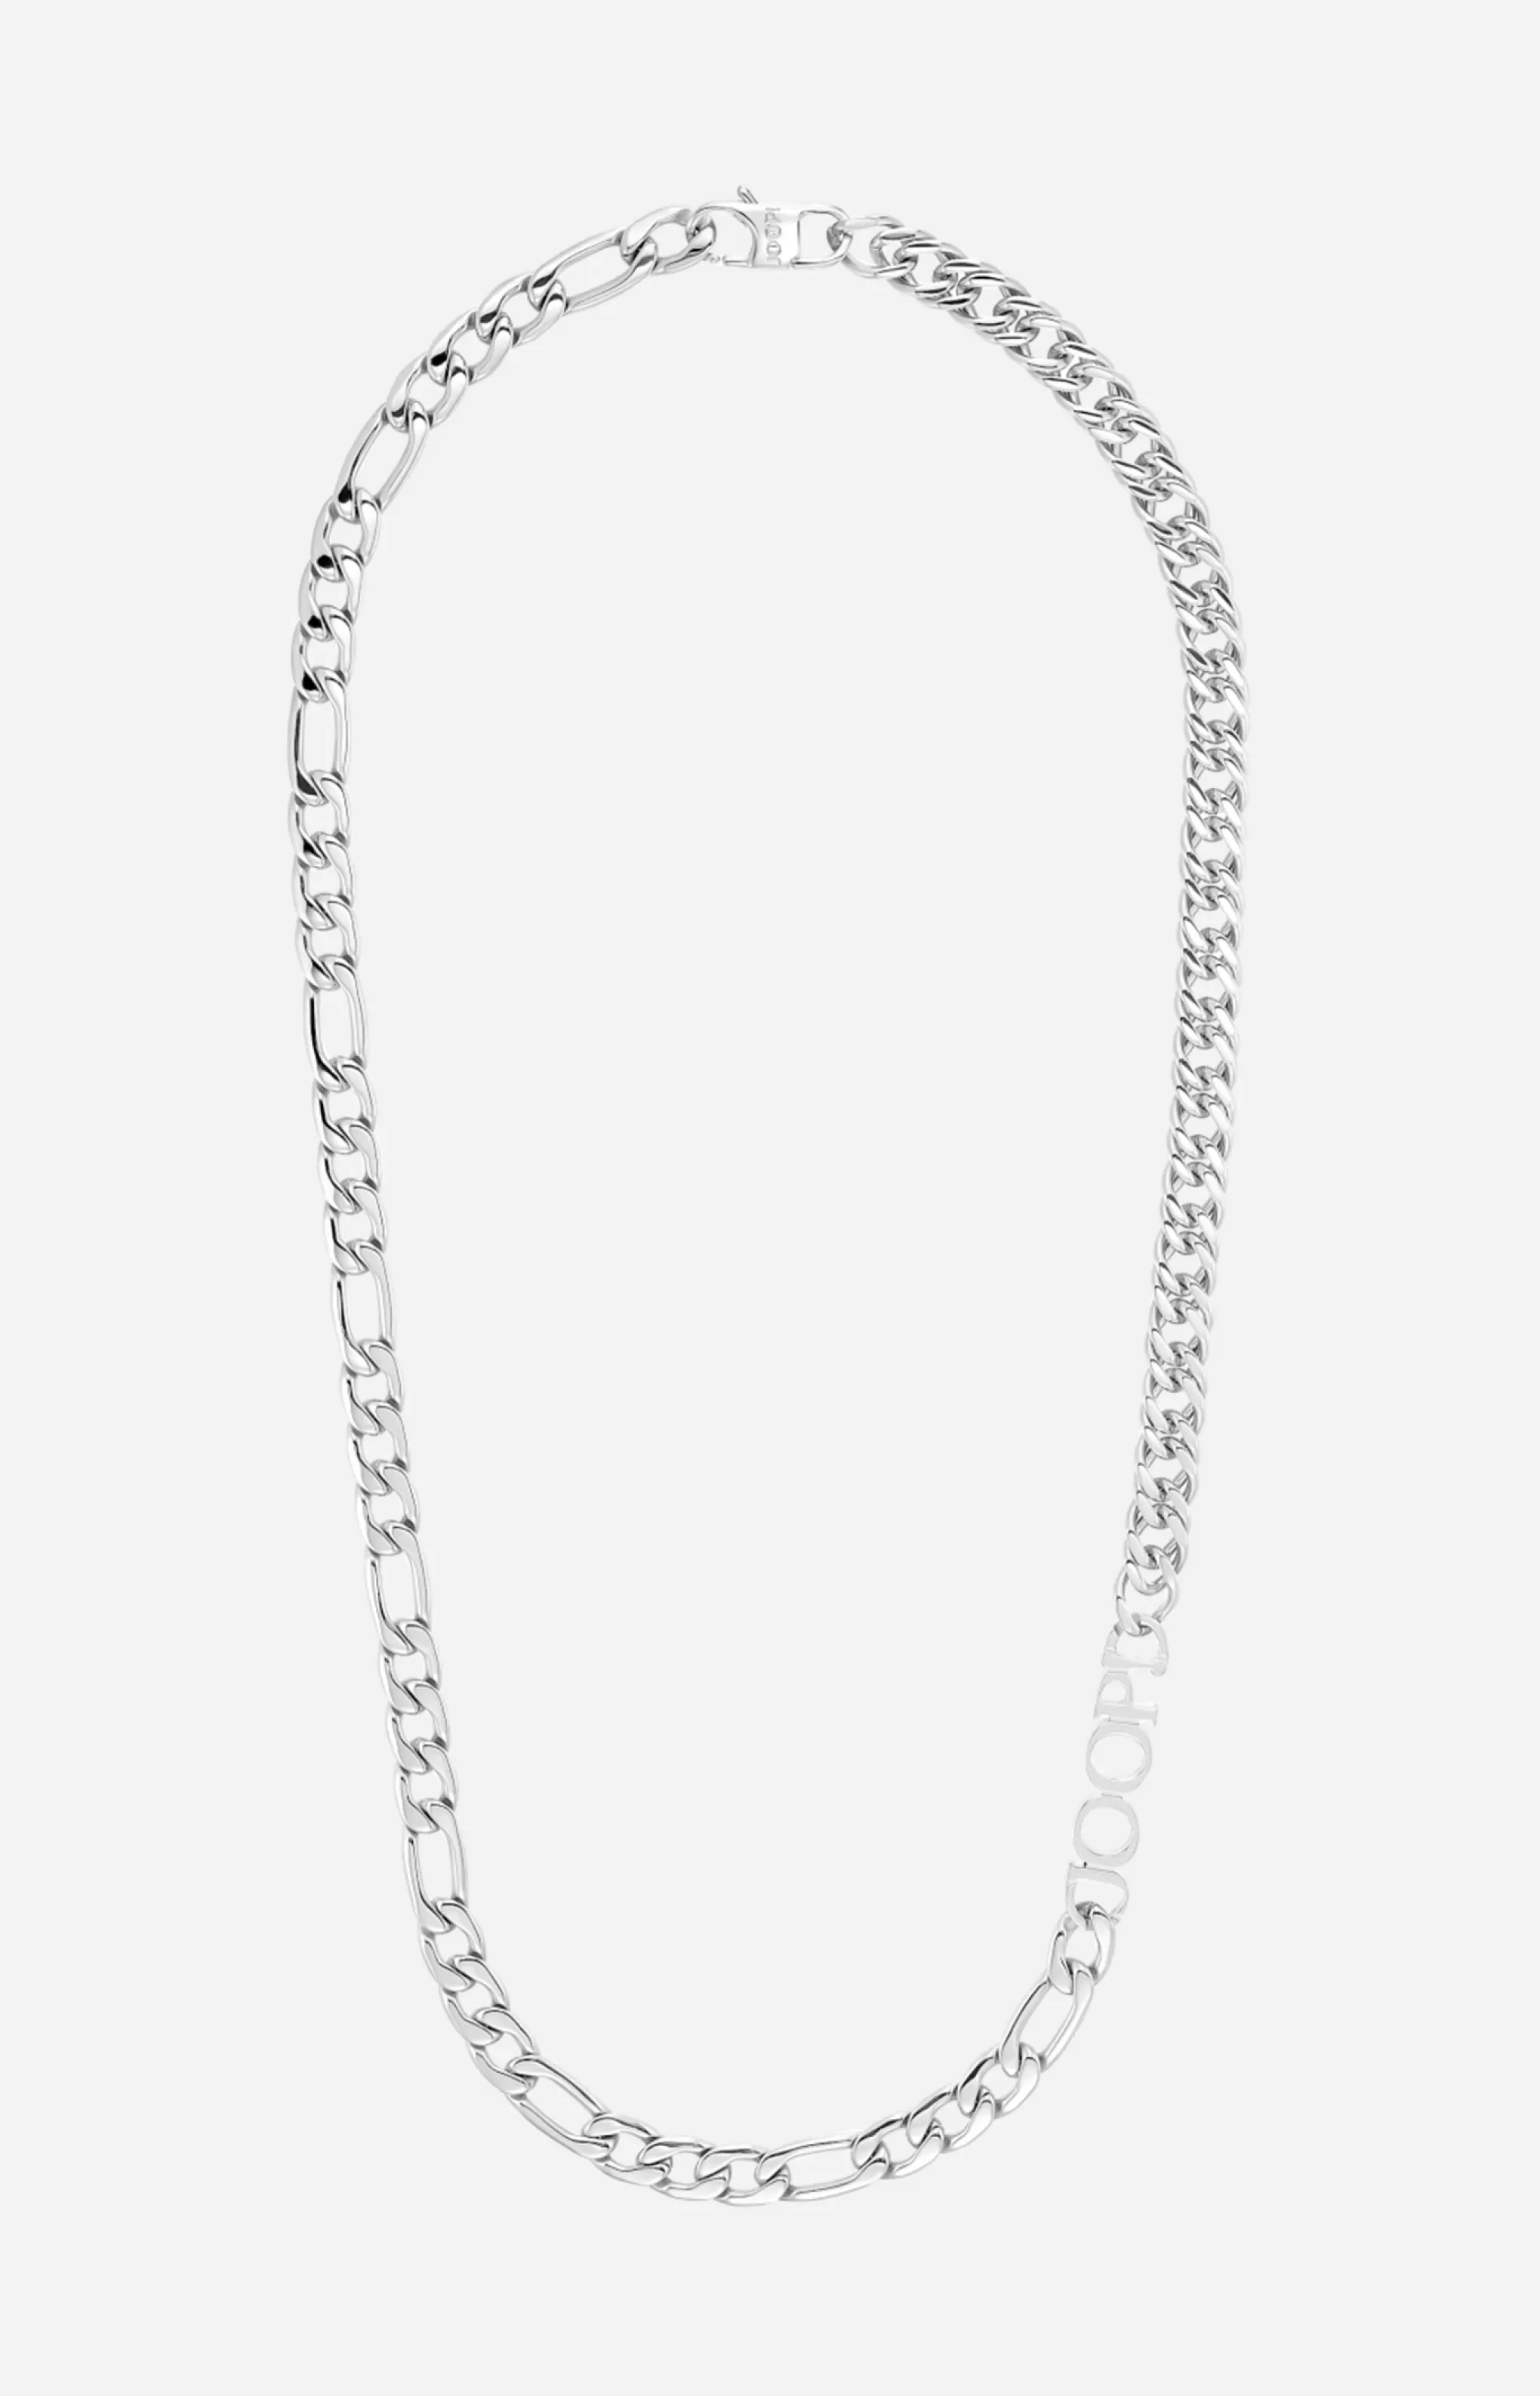 Necklaces | Jewellery*JOOP Necklaces | Jewellery Necklace